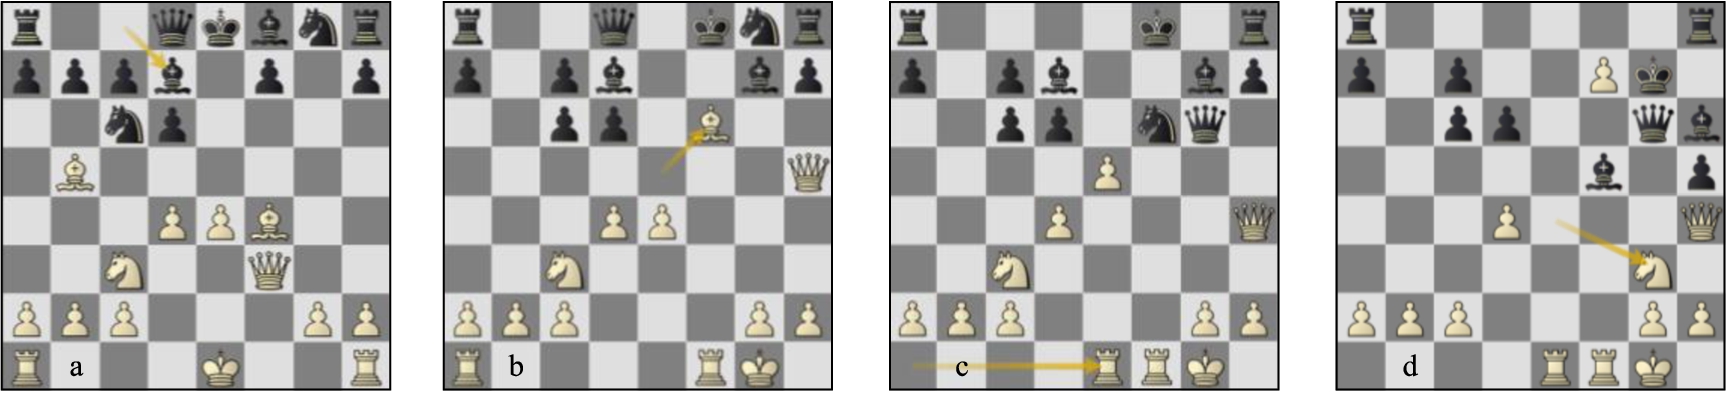 Game 09 Lc-St (a) p9w, (b) p13b, (c) p16b, (d) var. p20b.